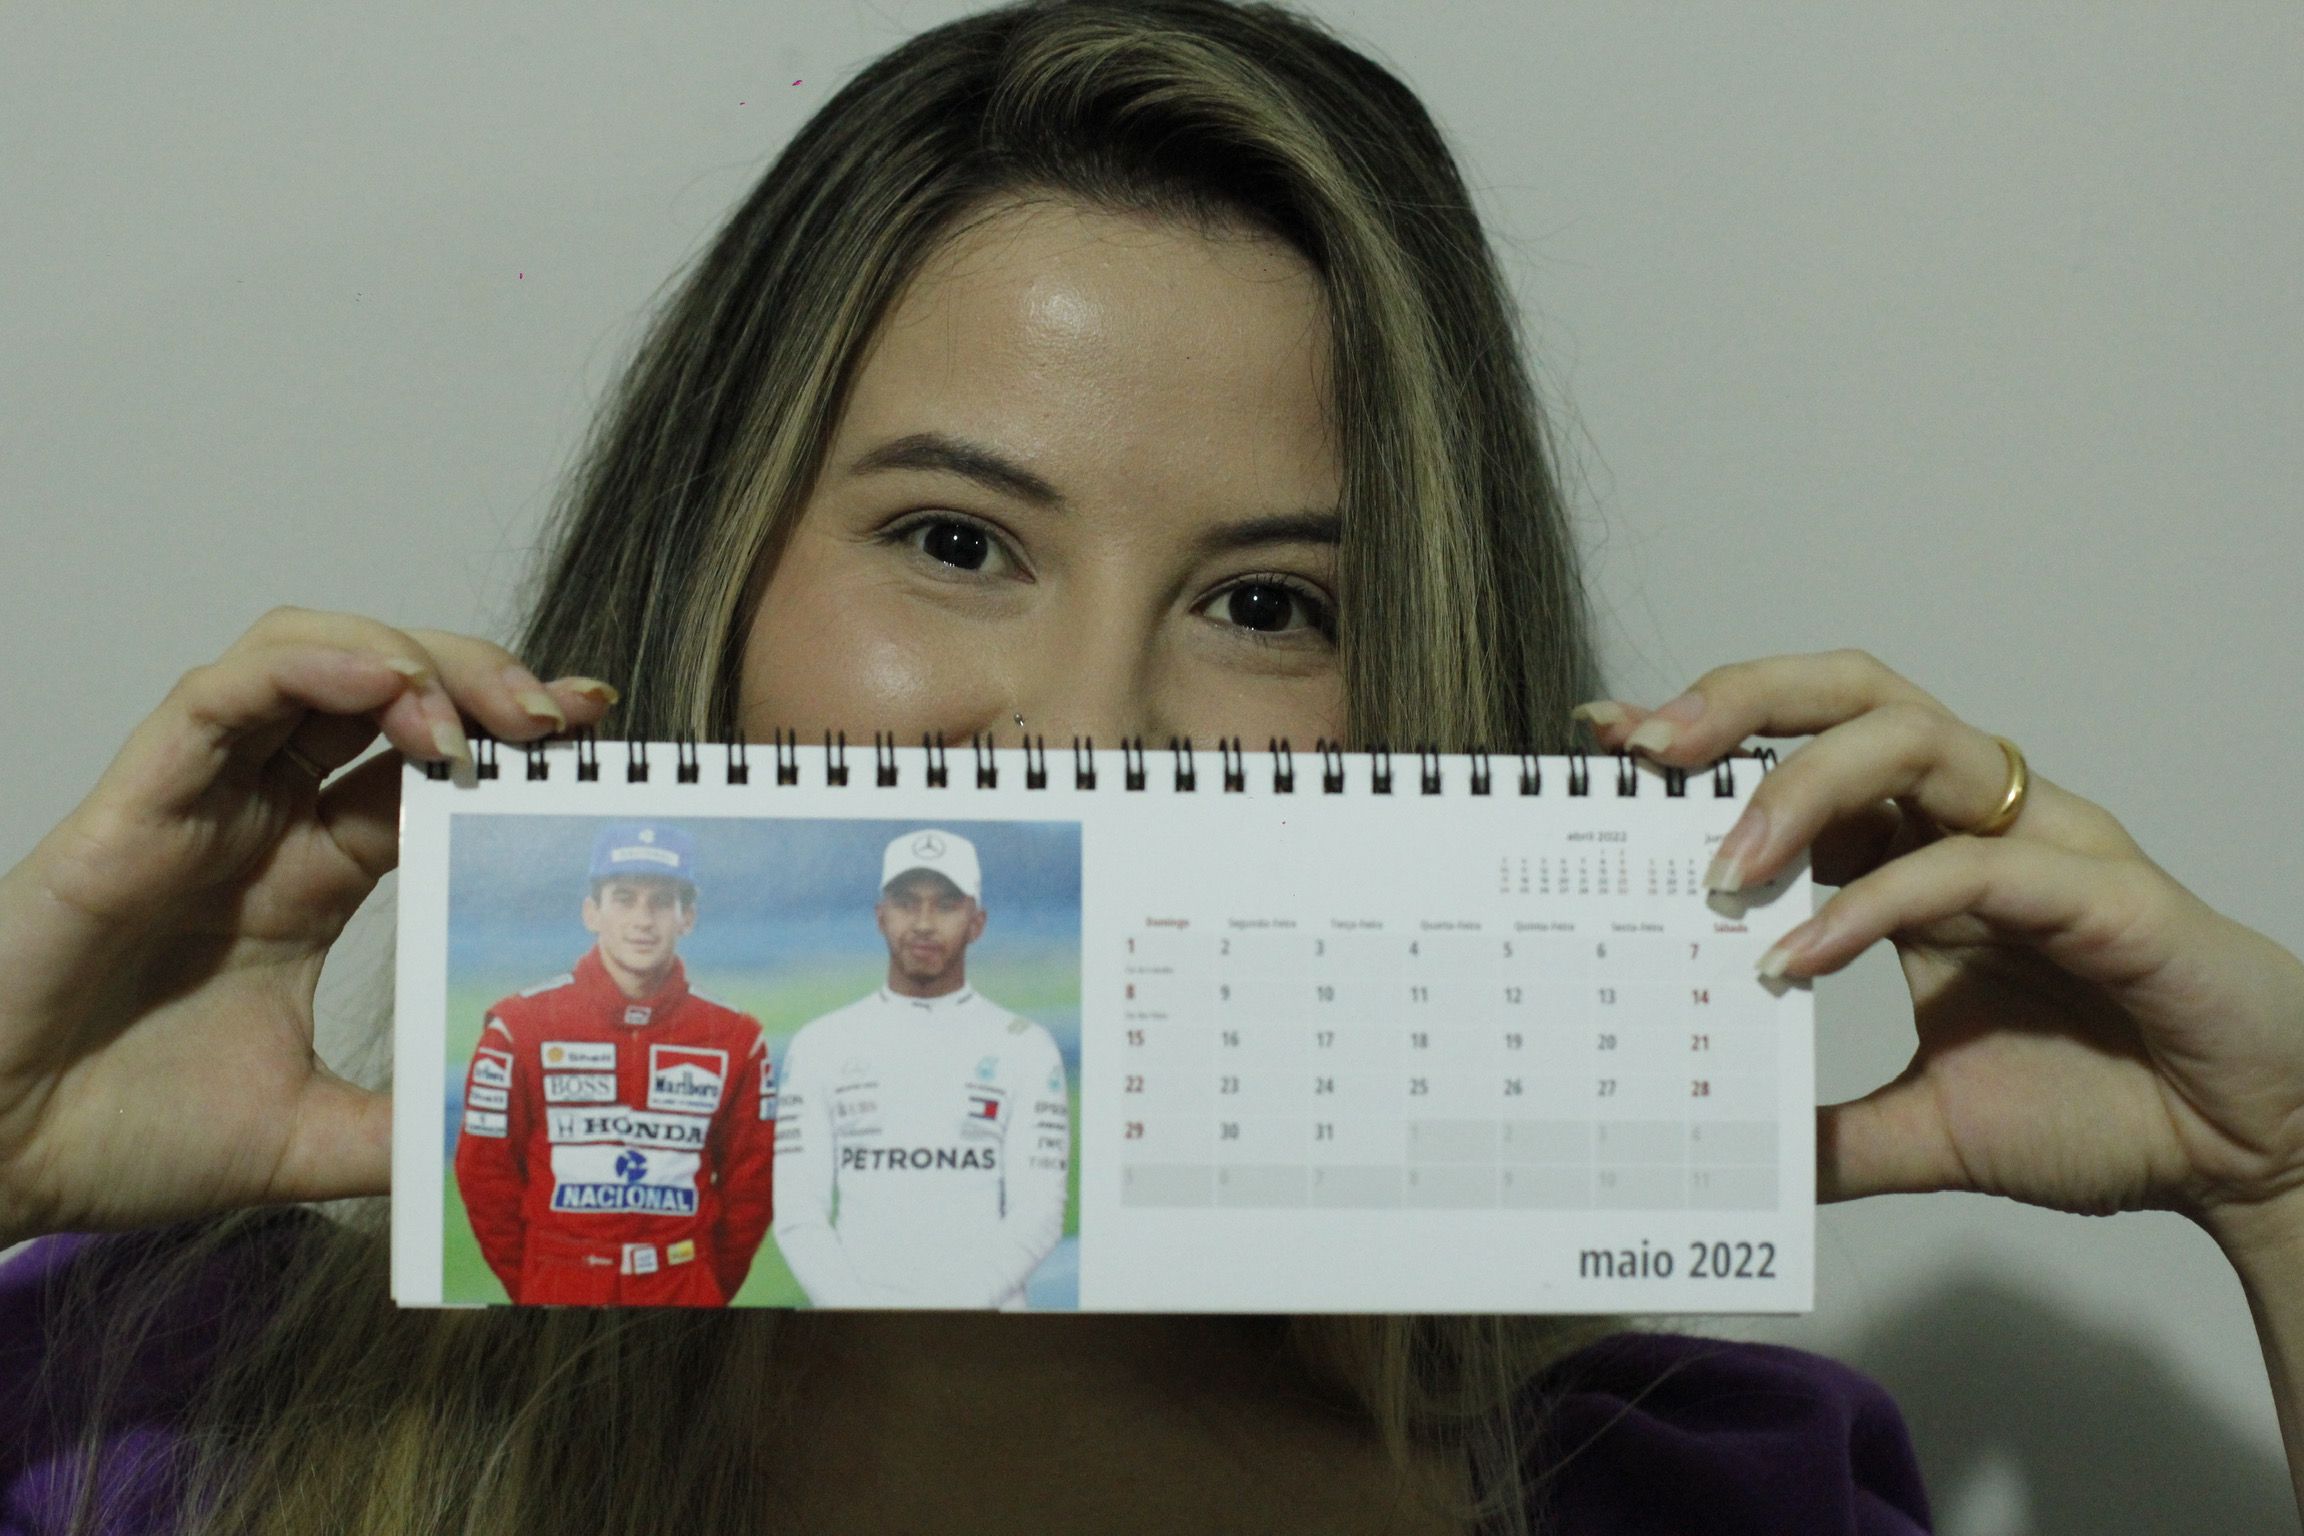 Calendário de Beatriz com as fotos de Senna e Hamilton, lado a lado.